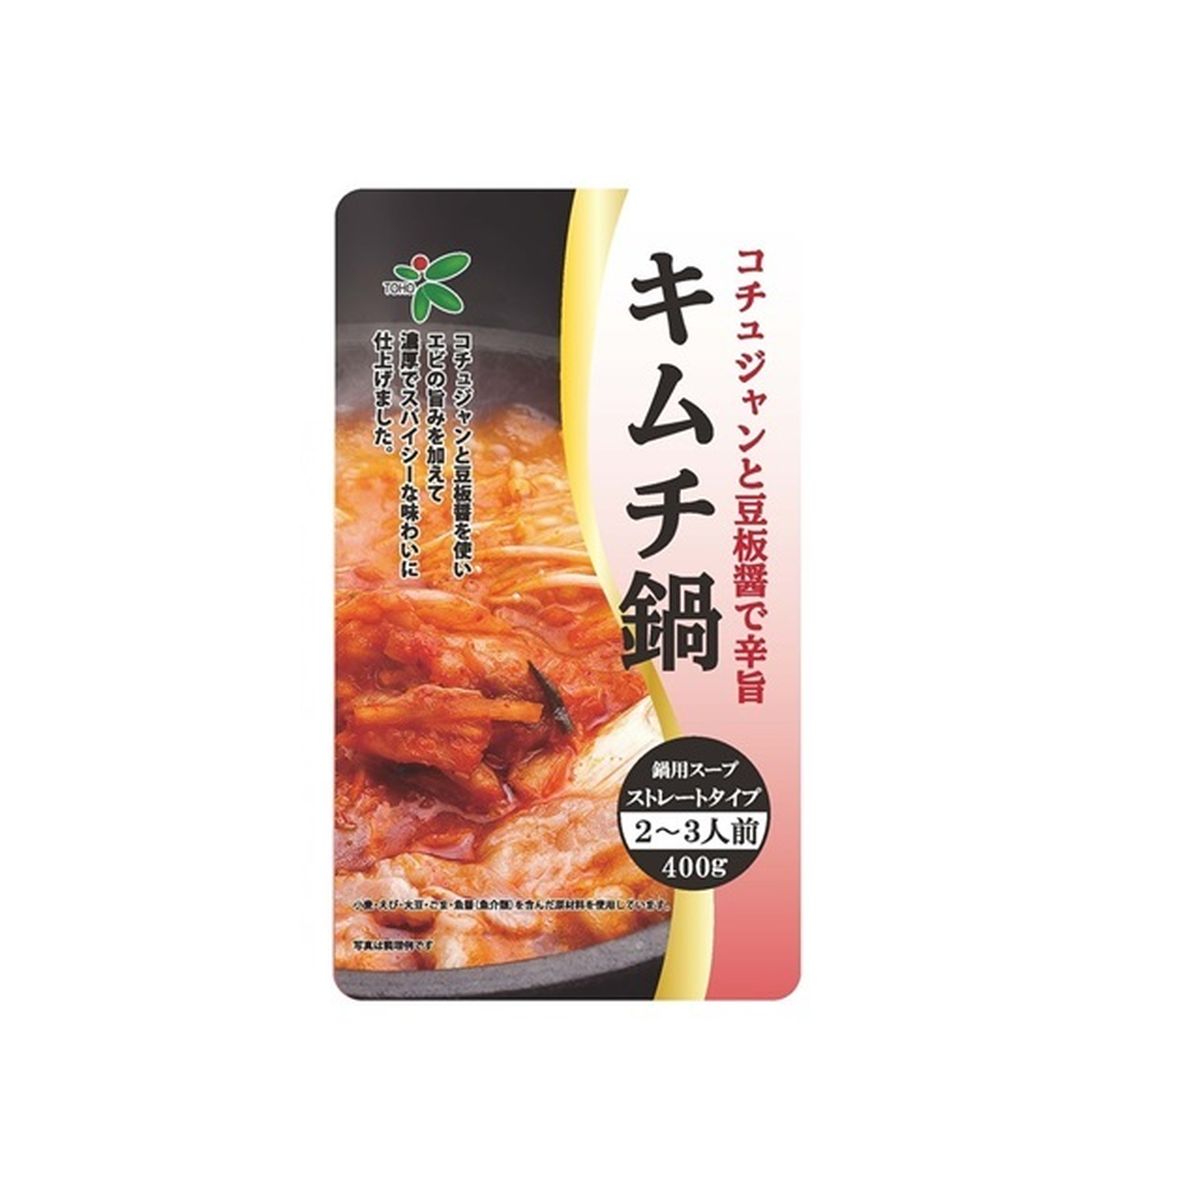 市場 《セット販売》 ×10個セット 豚キムチ炒飯の素 江崎グリコ 43.6g